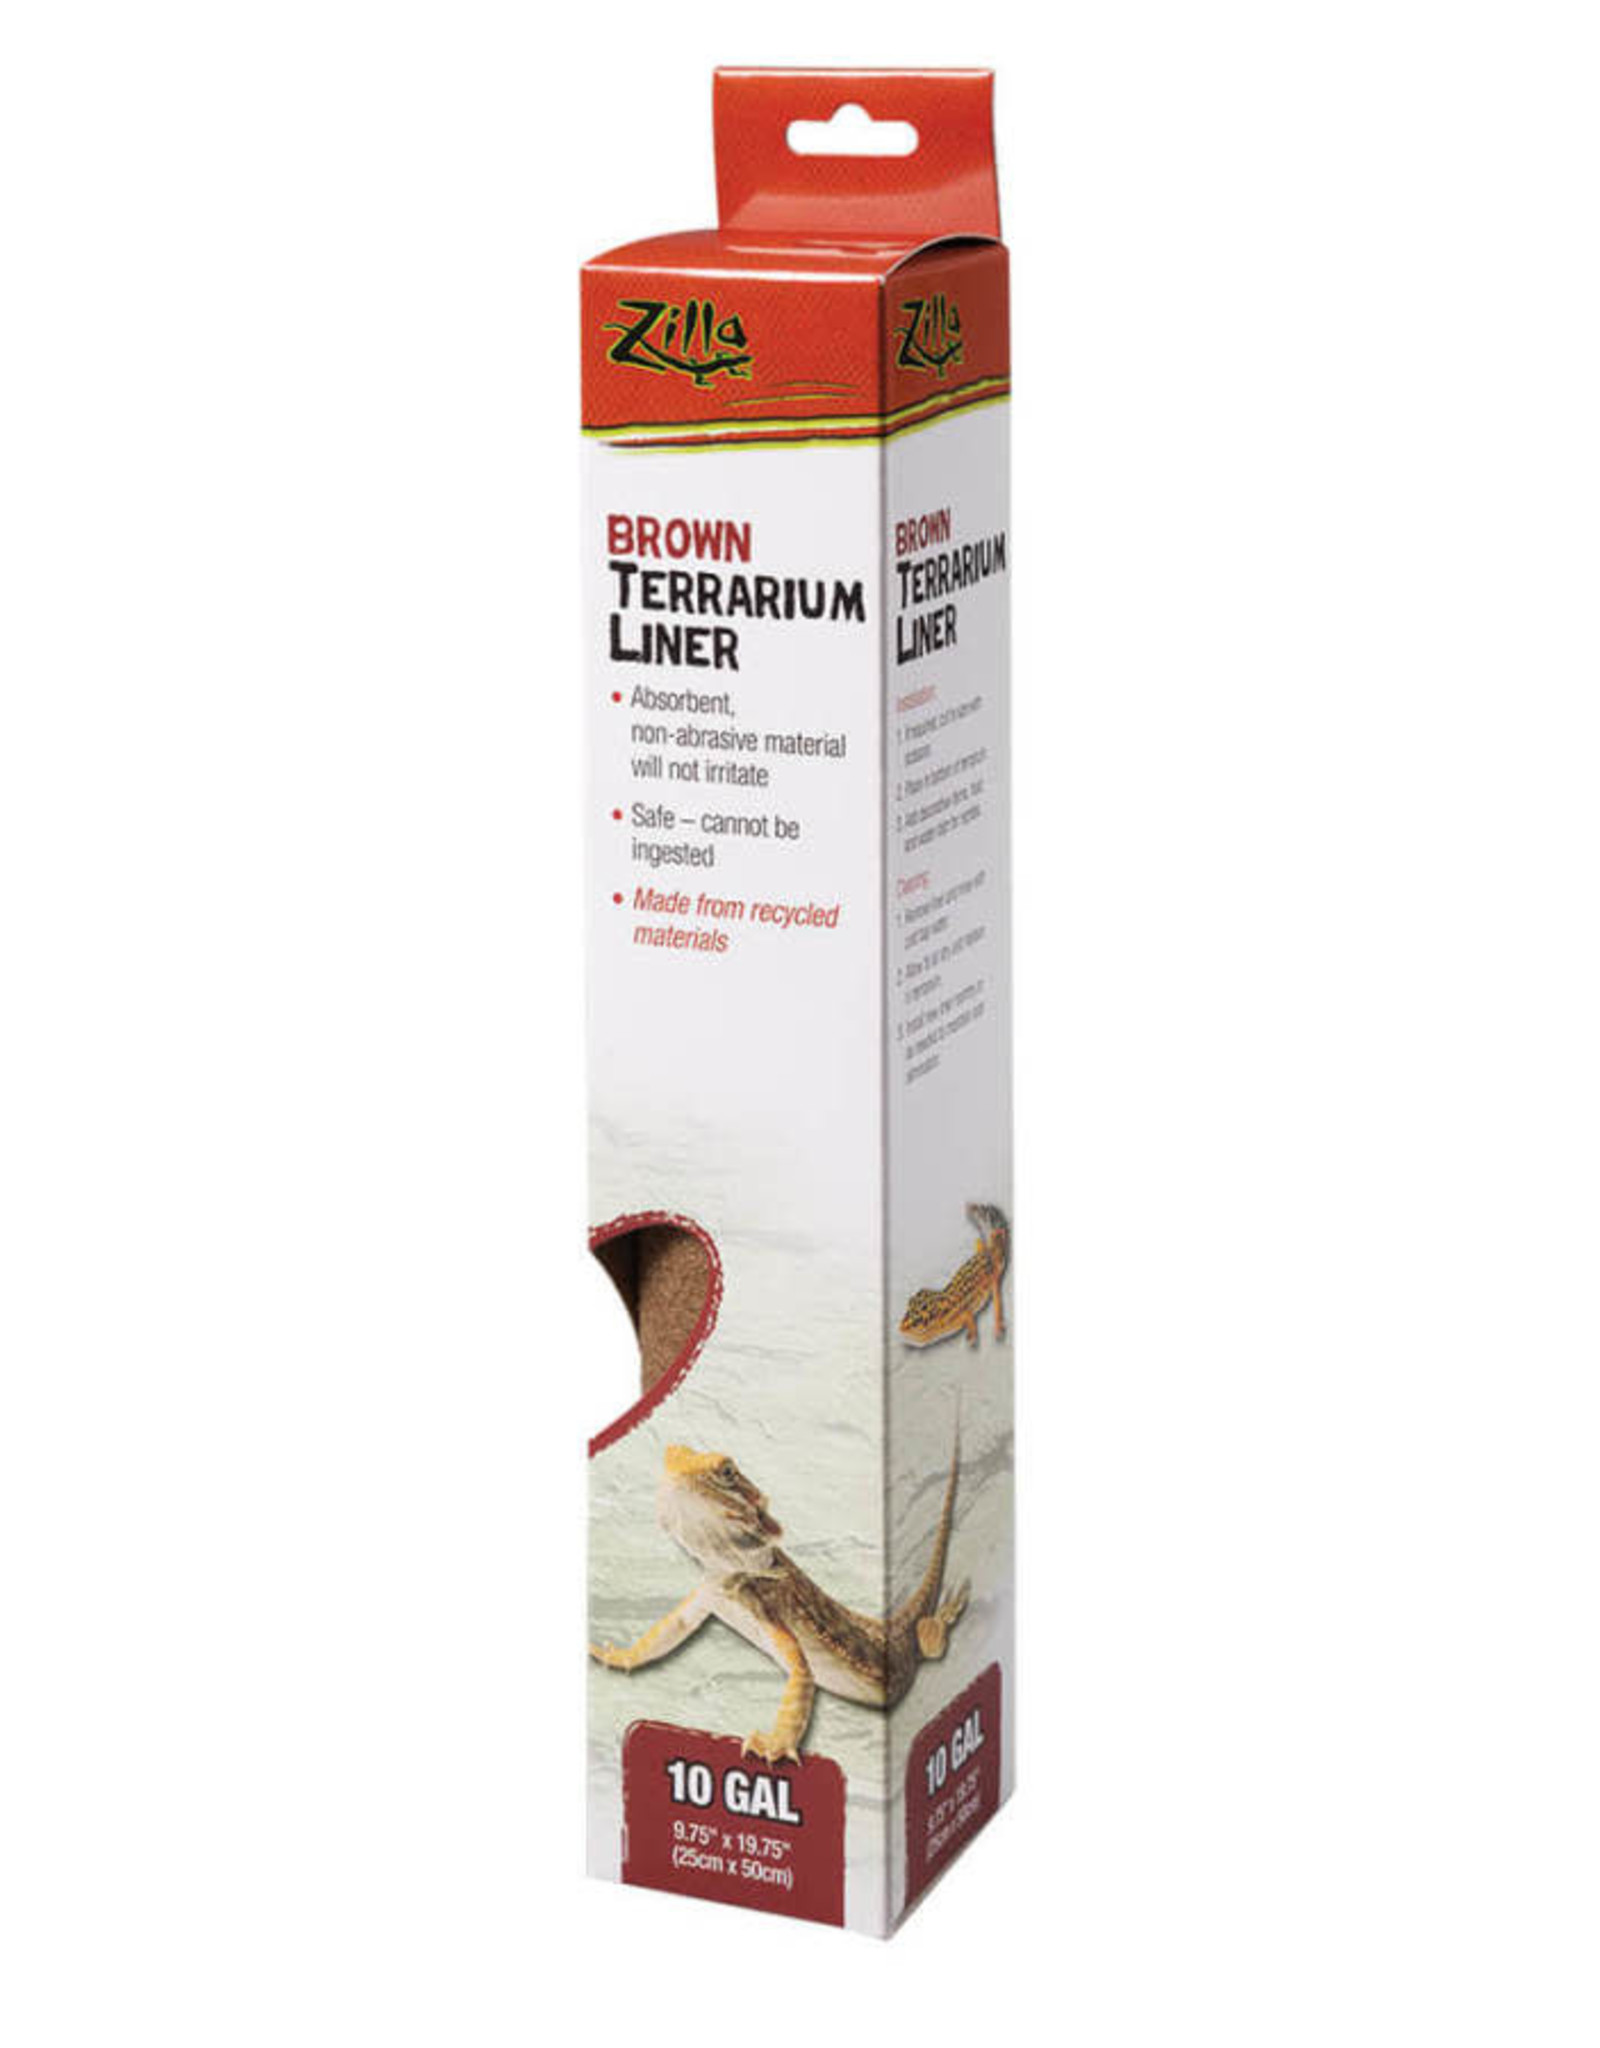 ENERGY SAVERS Zilla Reptile Terrarium Liners Brown 10/20x  gal